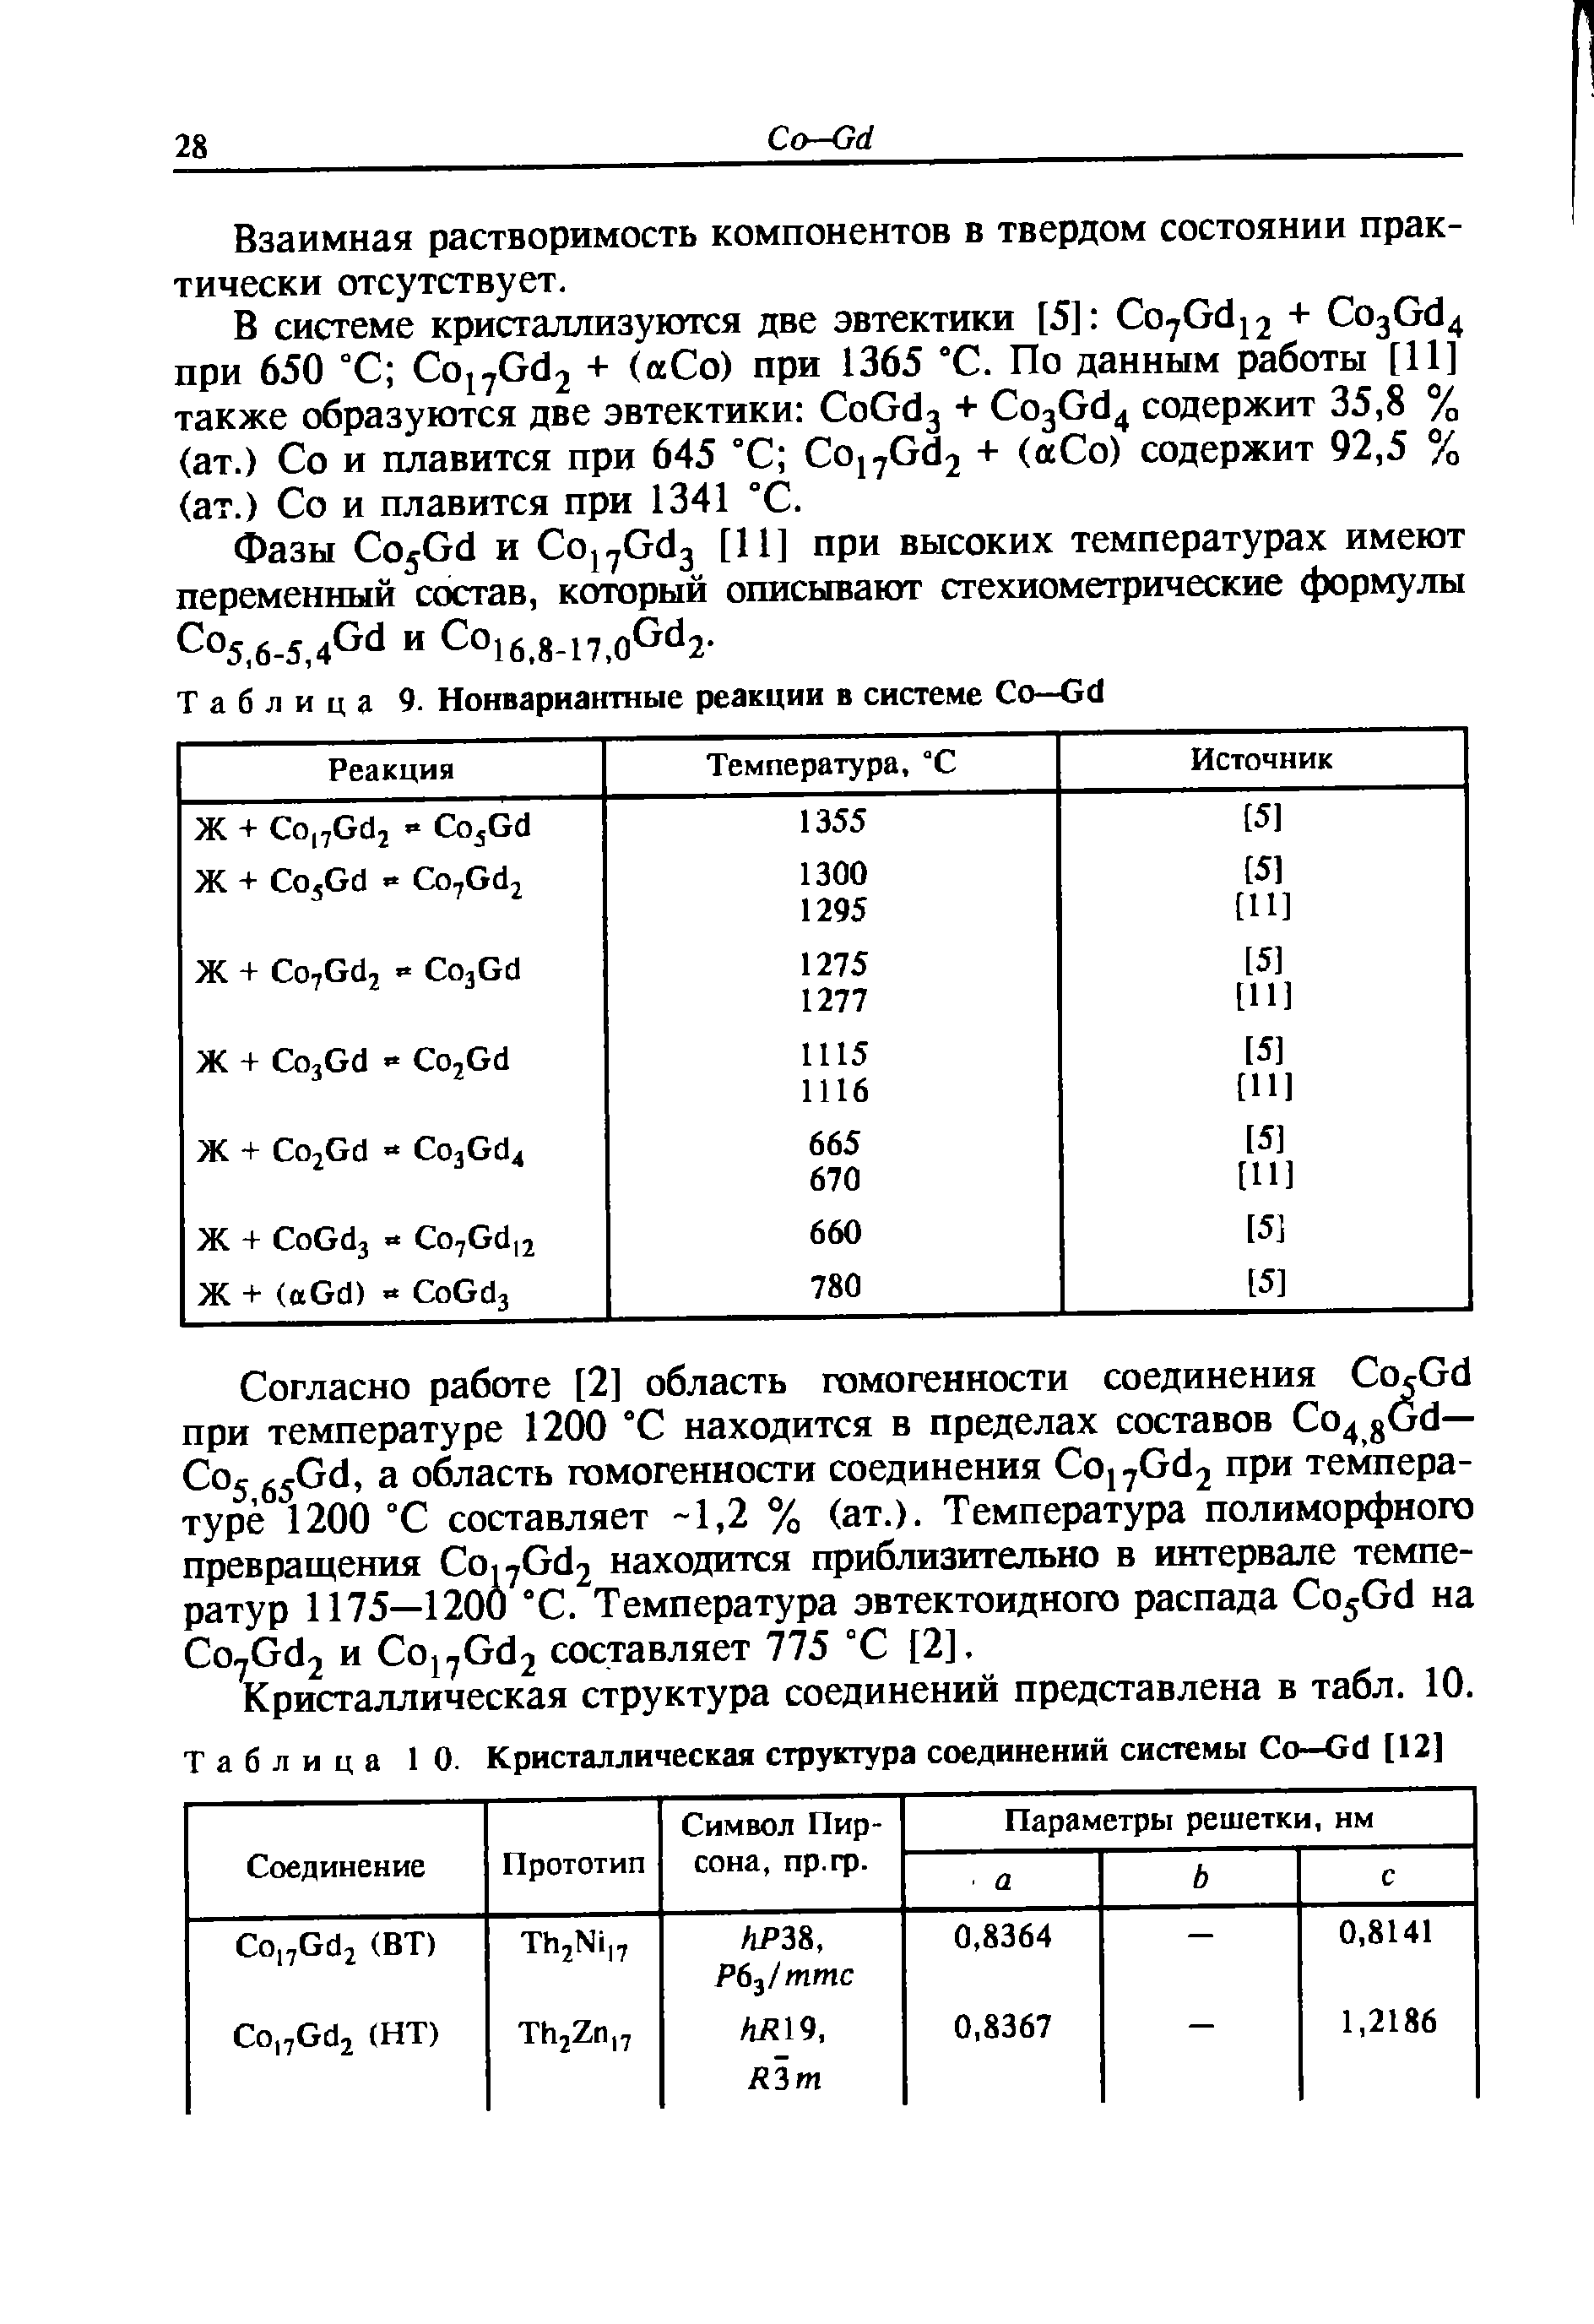 Таблица 9. Нонвариантные реакции в системе Со—Gd
